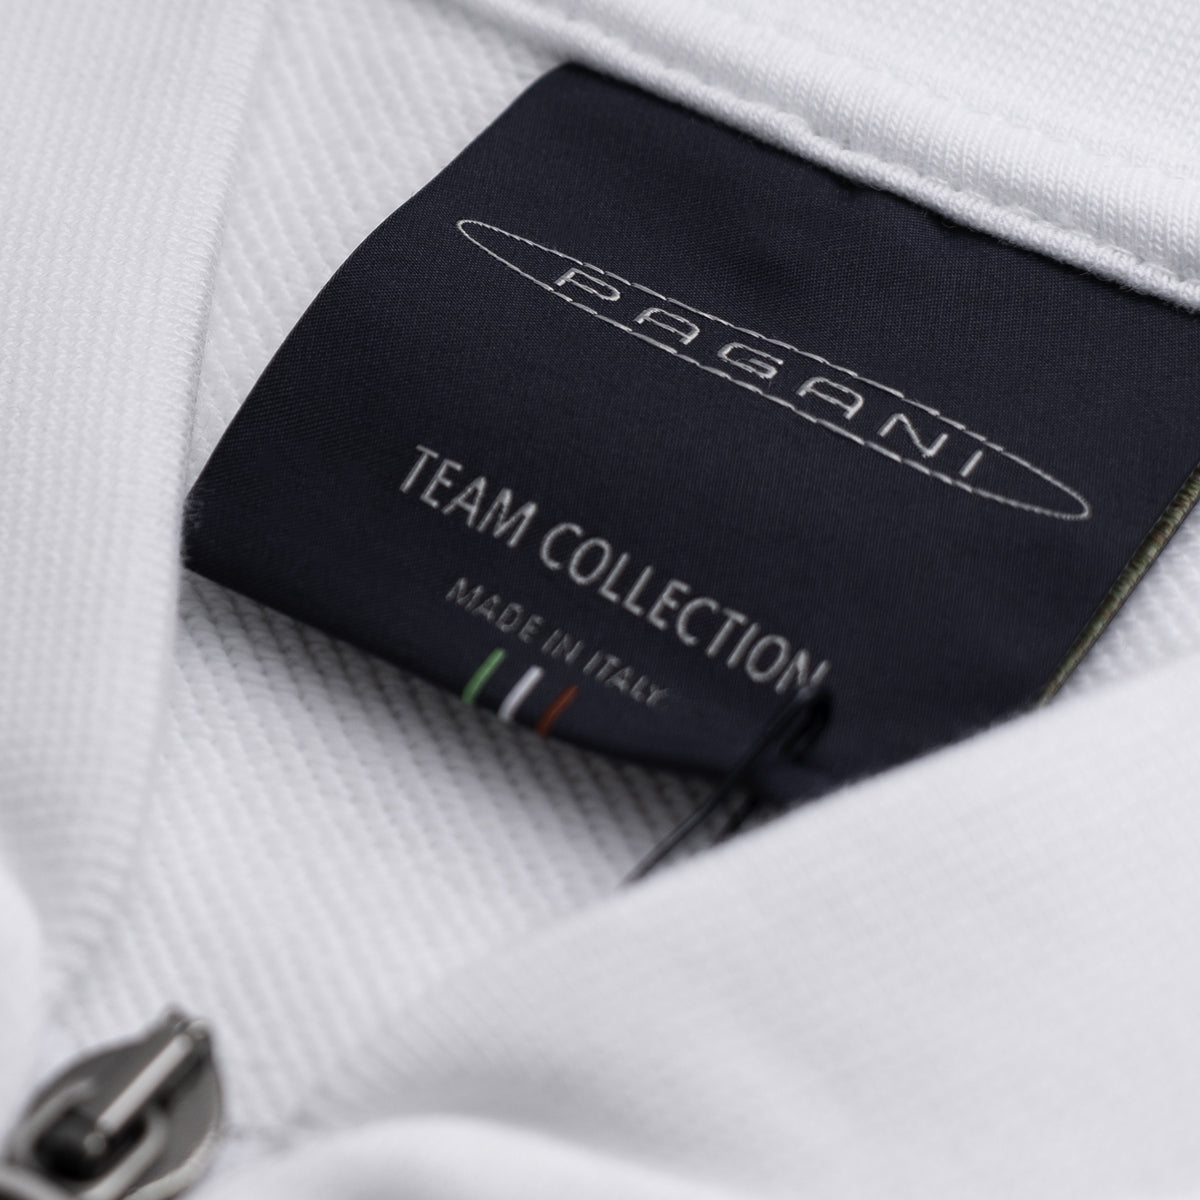 Herren-Basic-Sweatshirt Mit Durchgehendem Reissverschluss Weiß | Team Collection